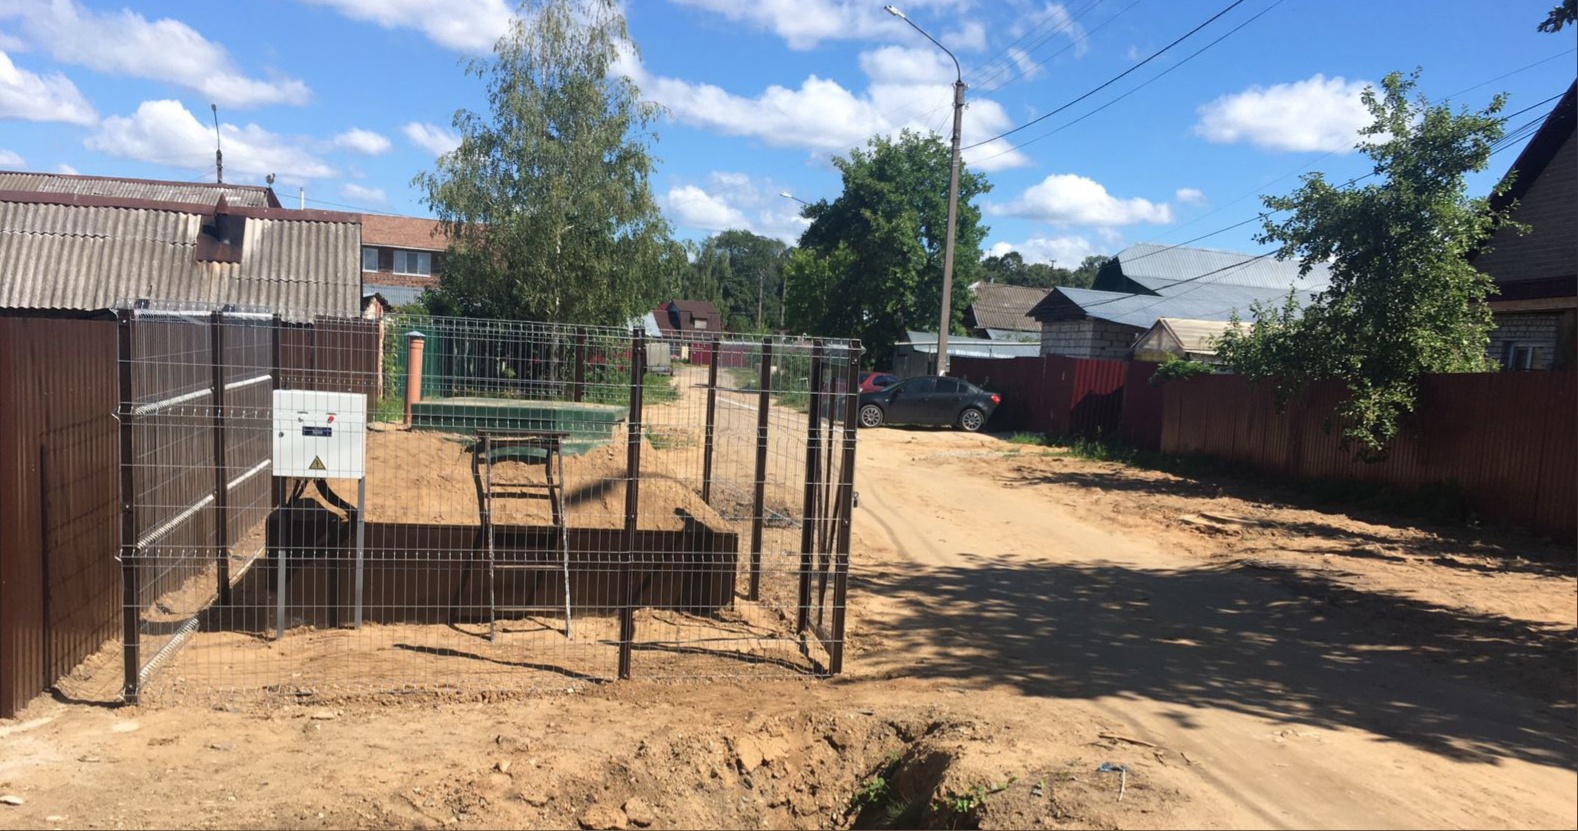 Частный сектор в Костроме проверяют на нечистоты